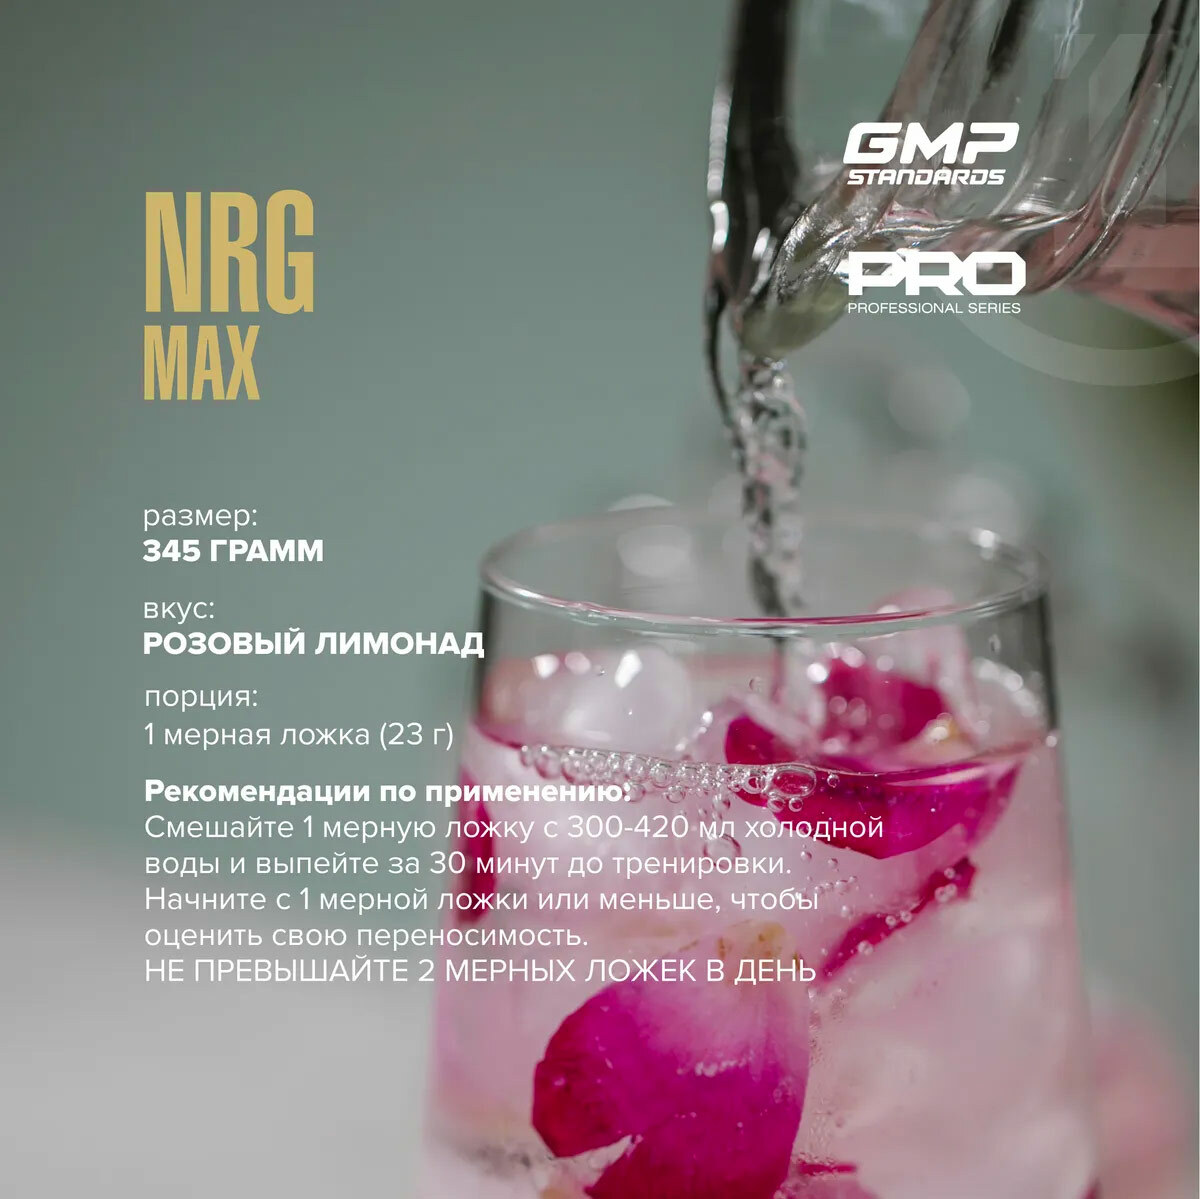 Вкус розовый лимонад. NRG Max Maxler 345 г. Maxler NRG Max Предтренировочный комплекс 345 гр.. Розовый лимонад состав. Претрен NRG Max Челябинск.